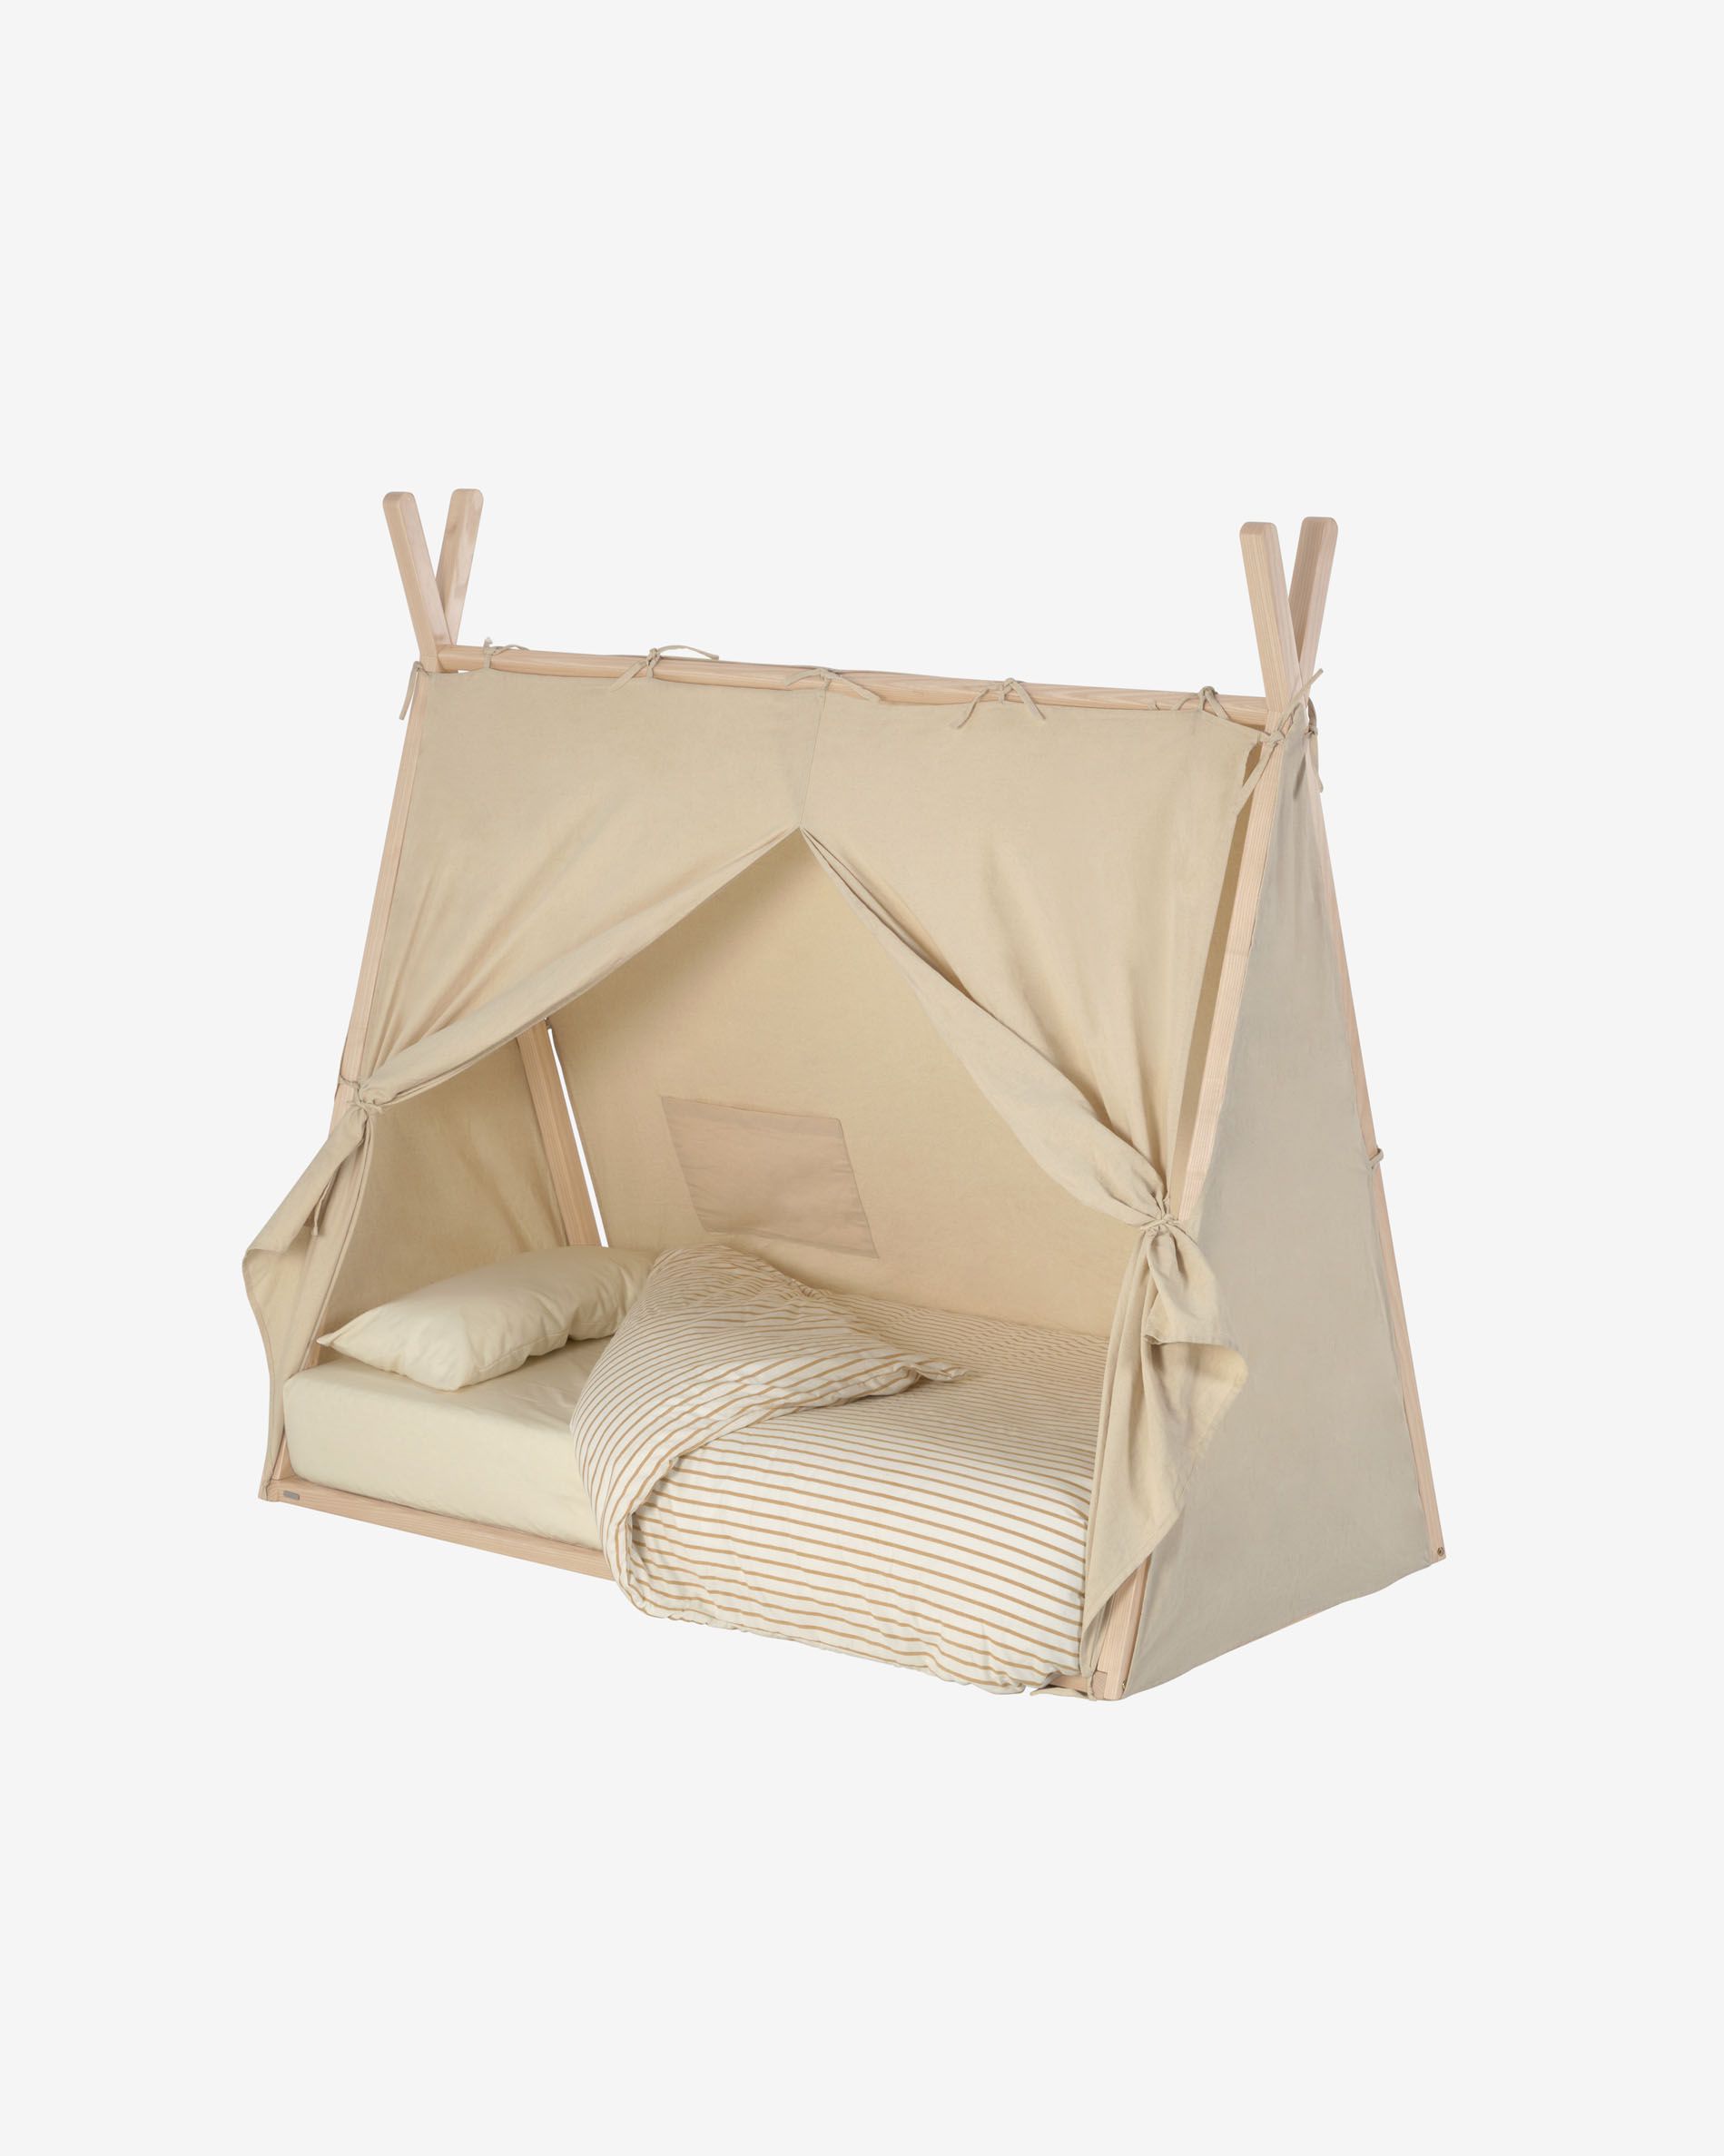 Met de Maralis tipi bed tentzeil maak je van dit tipi bed een mooie tent. Het zeil vouw je aan verschillende kanten open.